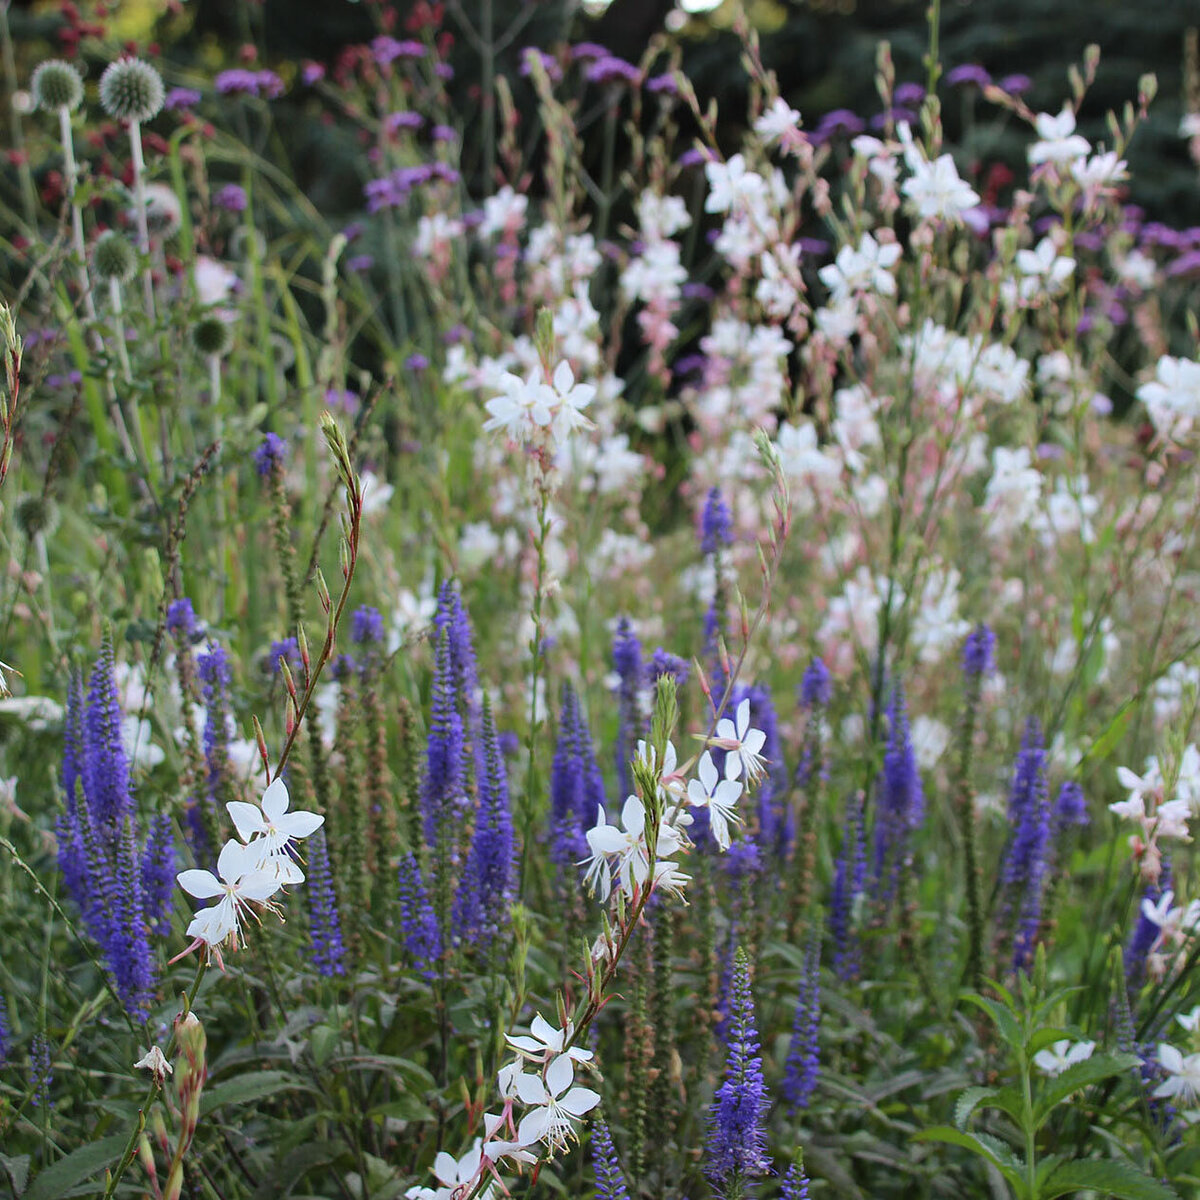 Graminées et fleurs dans des teintes violettes et blanches